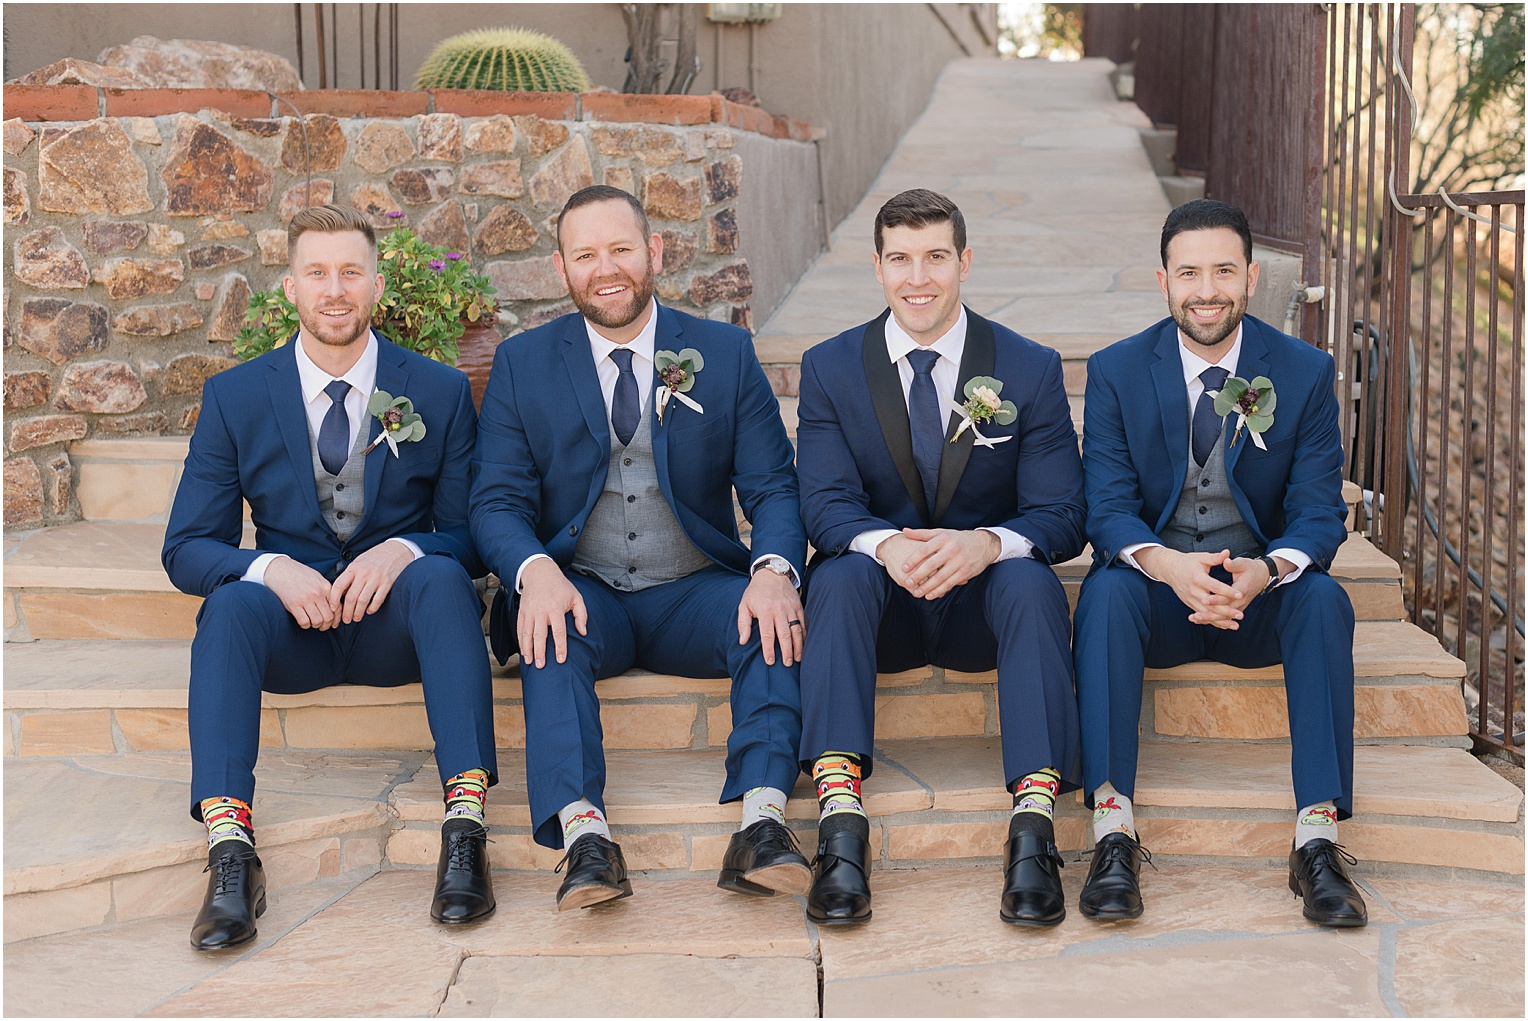 Saguaro Buttes Wedding Tucson, Arizona Farnaz & Brian groomsmen photos